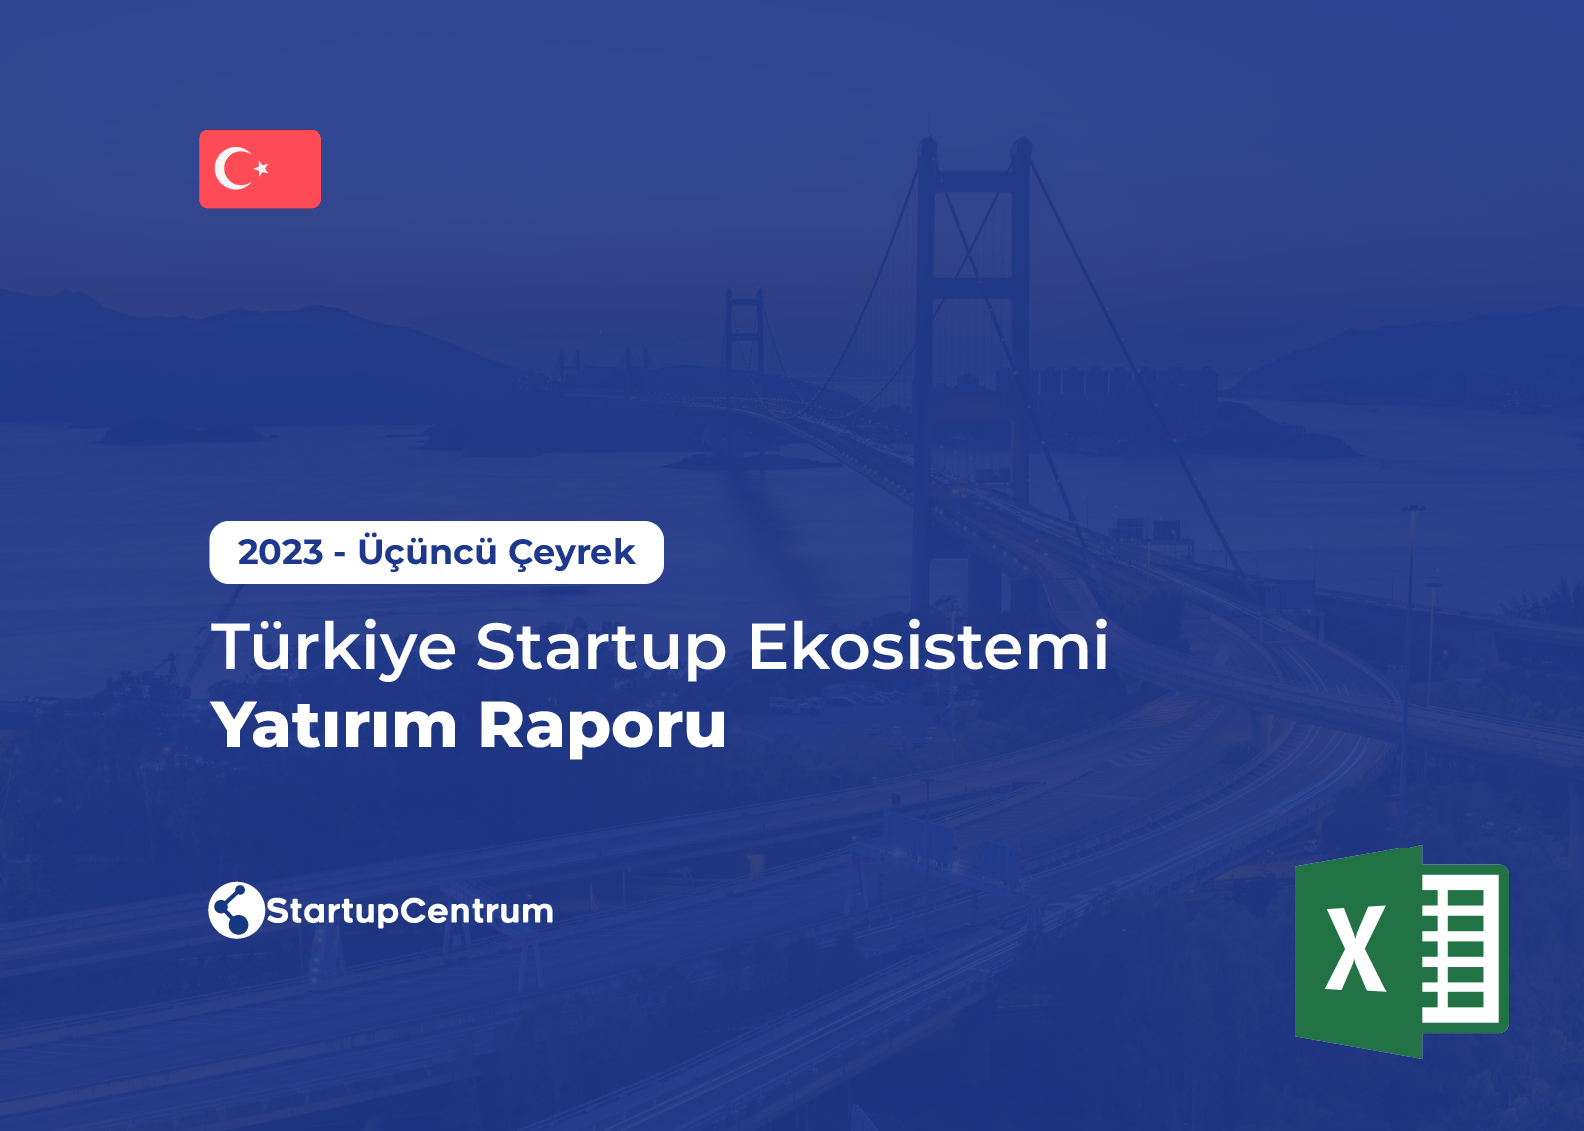 2023 - Üçüncü Çeyrek Türkiye Startup Ekosistemi Yatırım Raporu (Veri) Cover Image